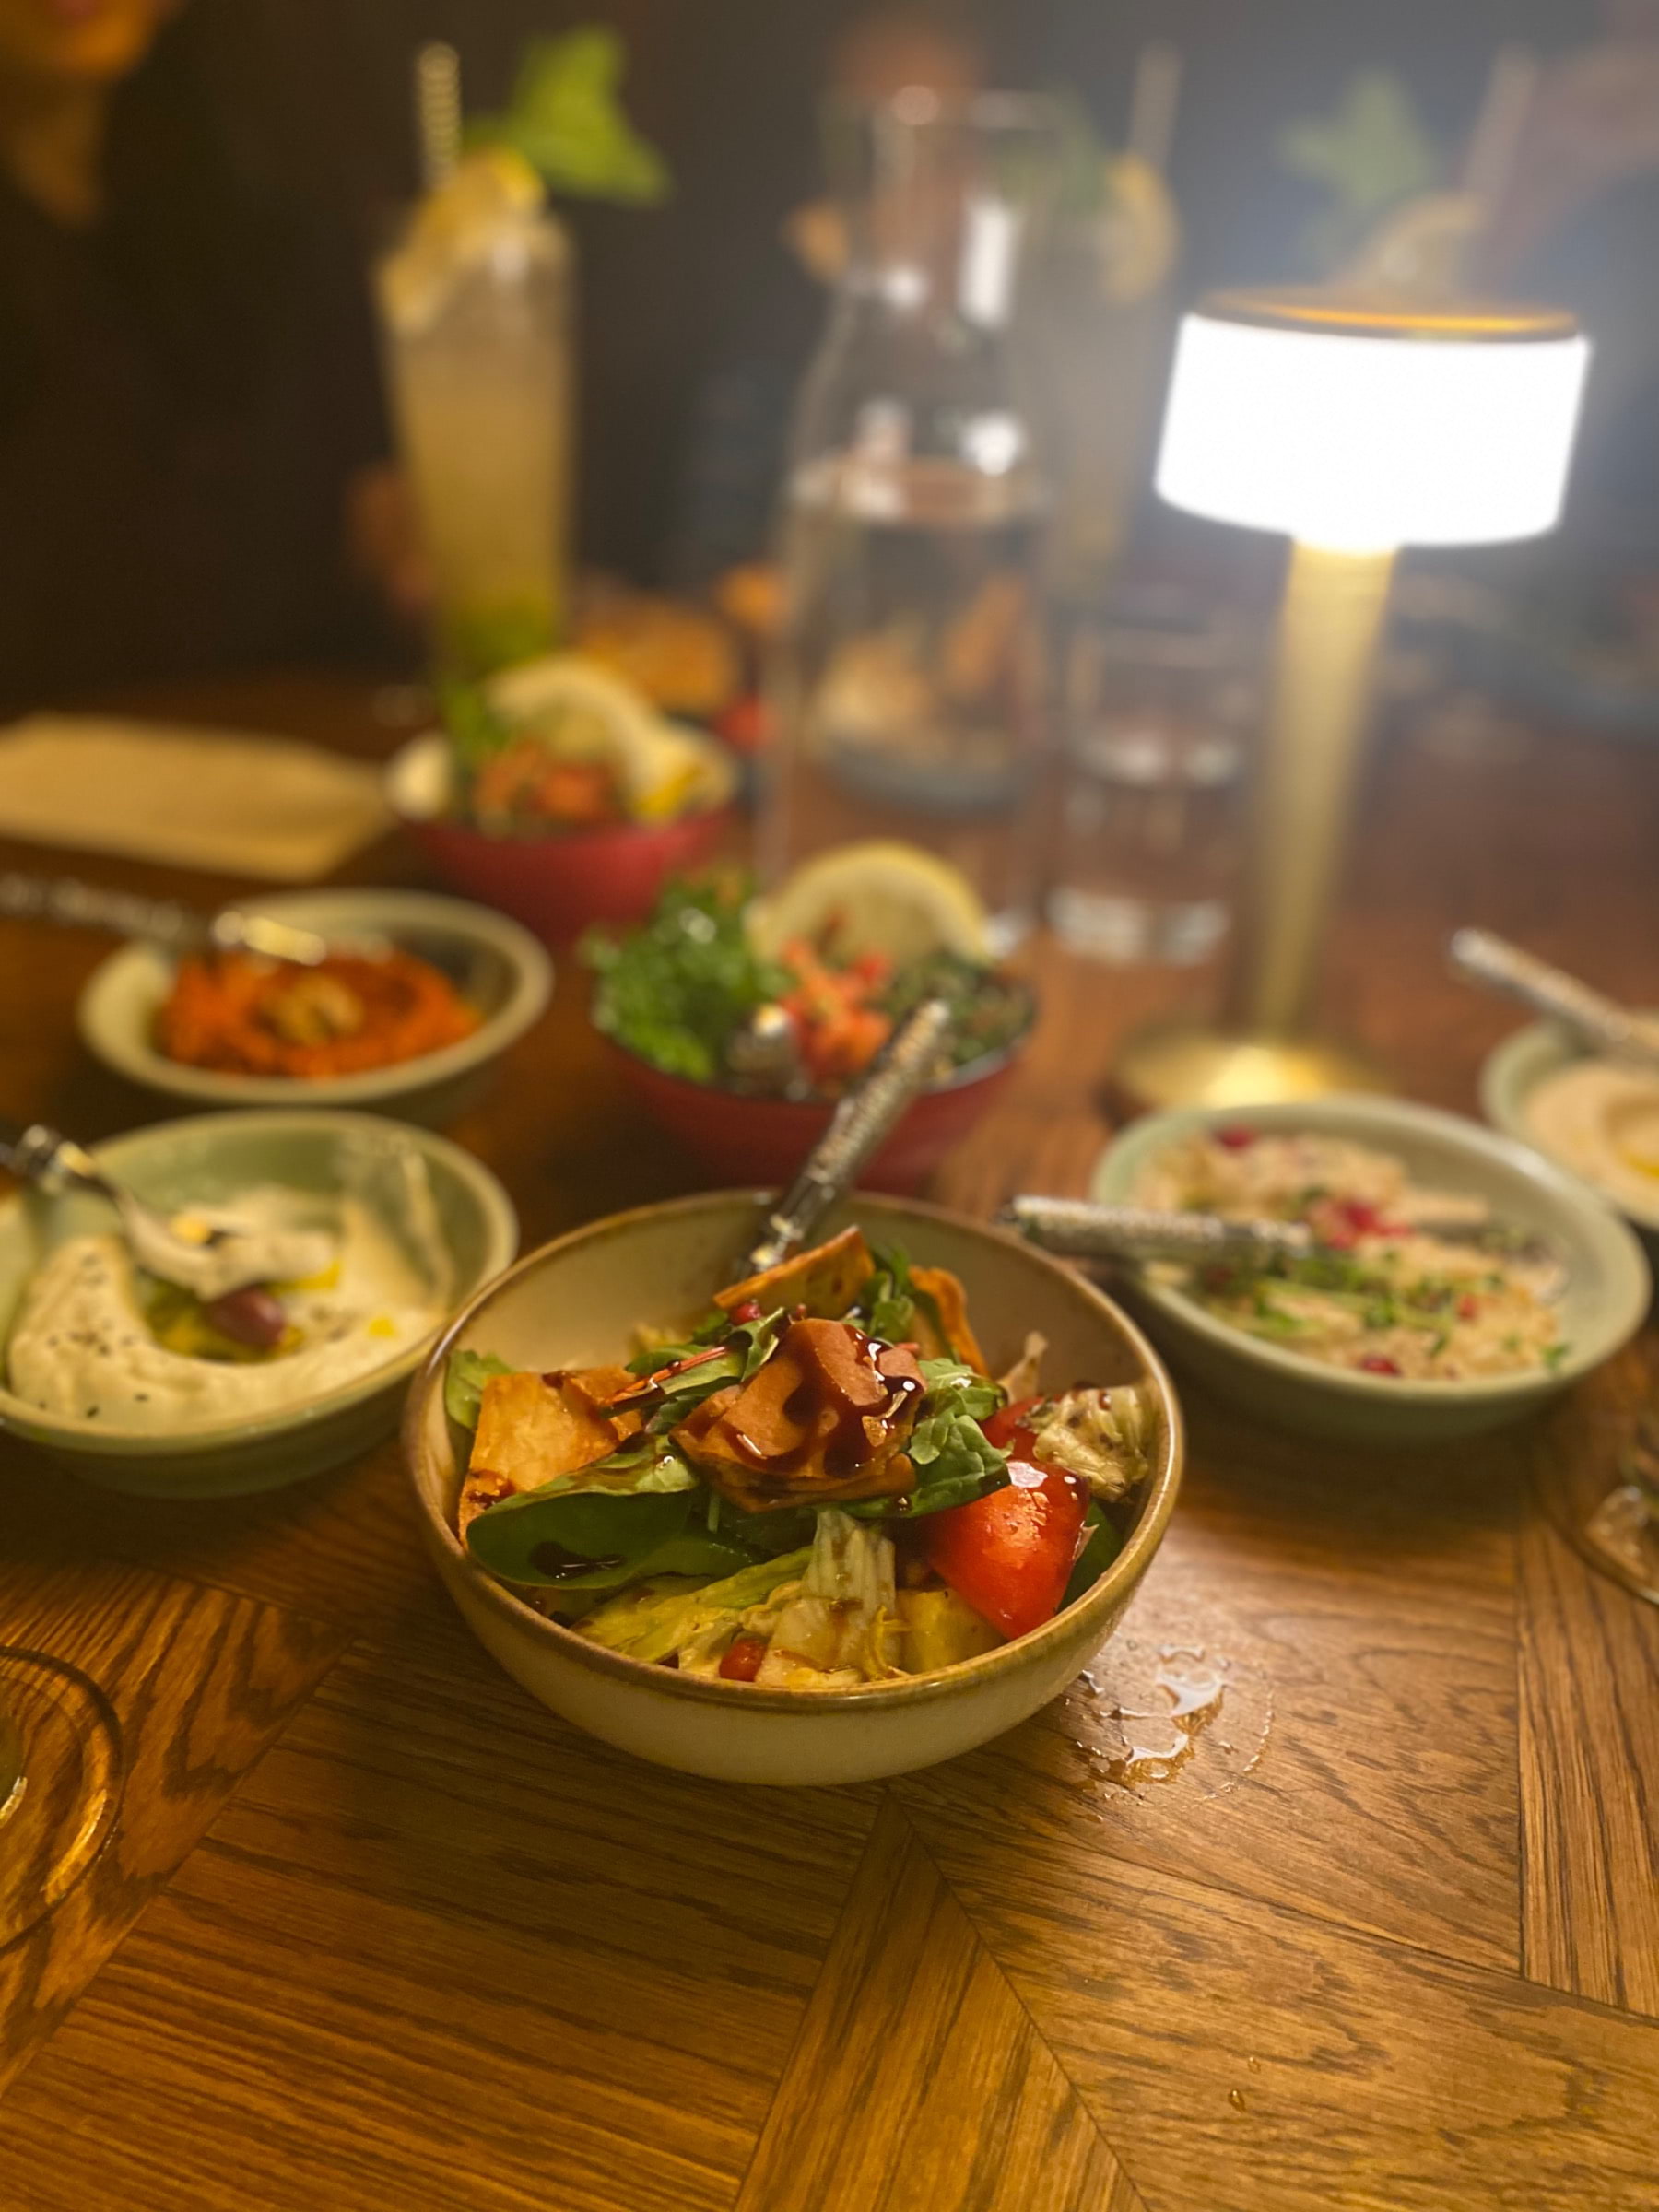 Kyklingvspwts. Falafel talrik, lamm kaftanens bulgur och potatis klyftor  – Bild från Lebanon Meza Lounge av Madiha S. (2022-06-29)